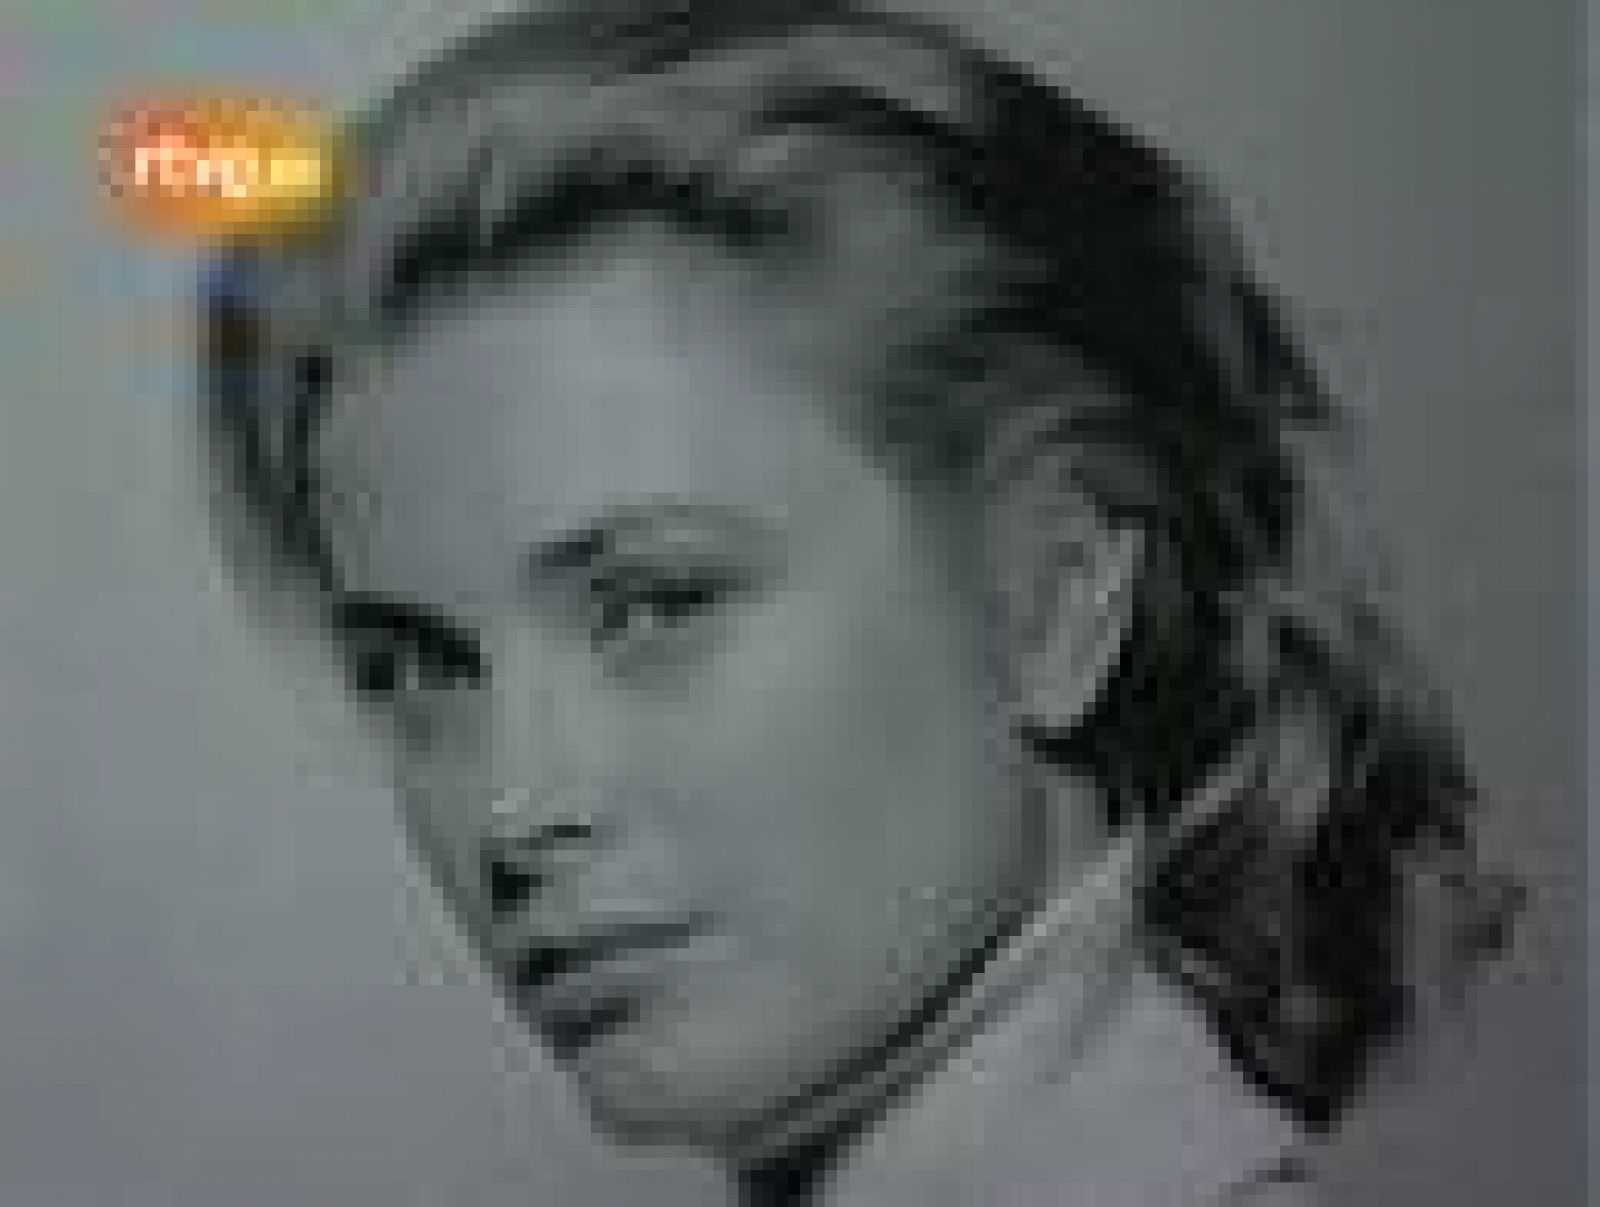  El 14 de septiembre de 1982 Grace Kelly perdía la vida en una accidente de coche. La princesa y su hija pequeña Estefanía regresaban a Mónaco desde Niza por una carretera estrecha al filo de la Costa Azul 